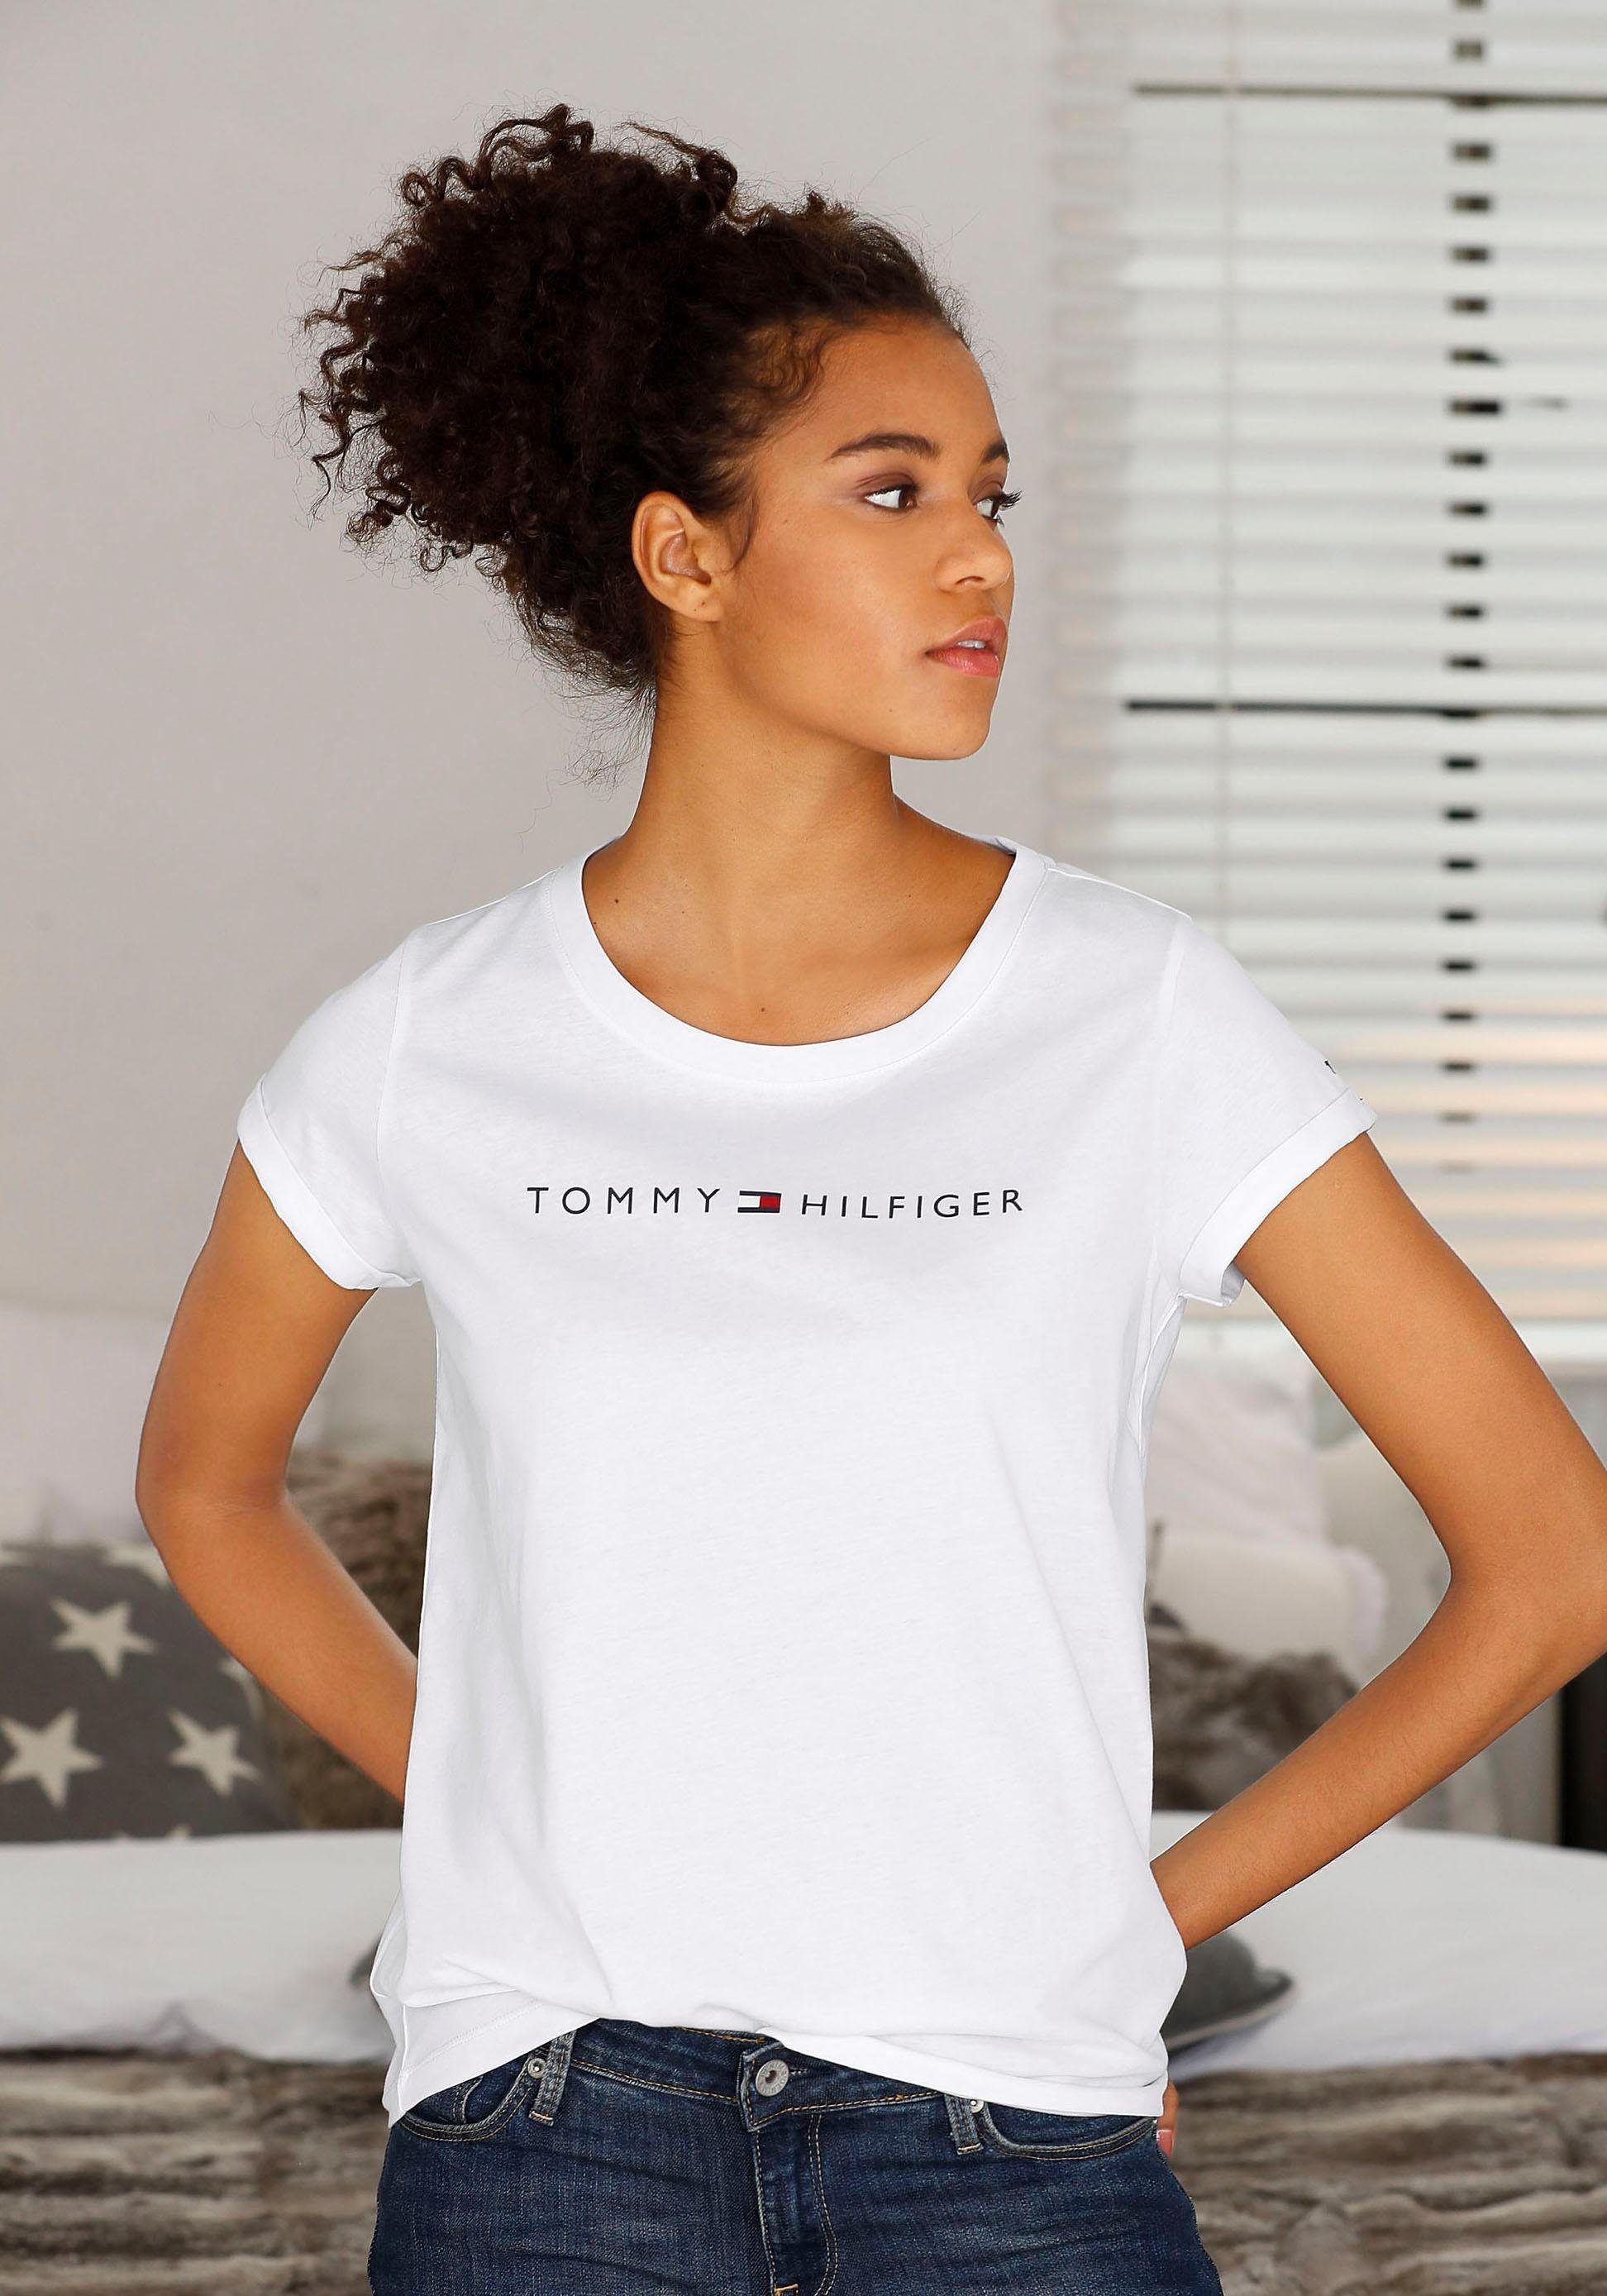 Weißes T-Shirt online kaufen | OTTO